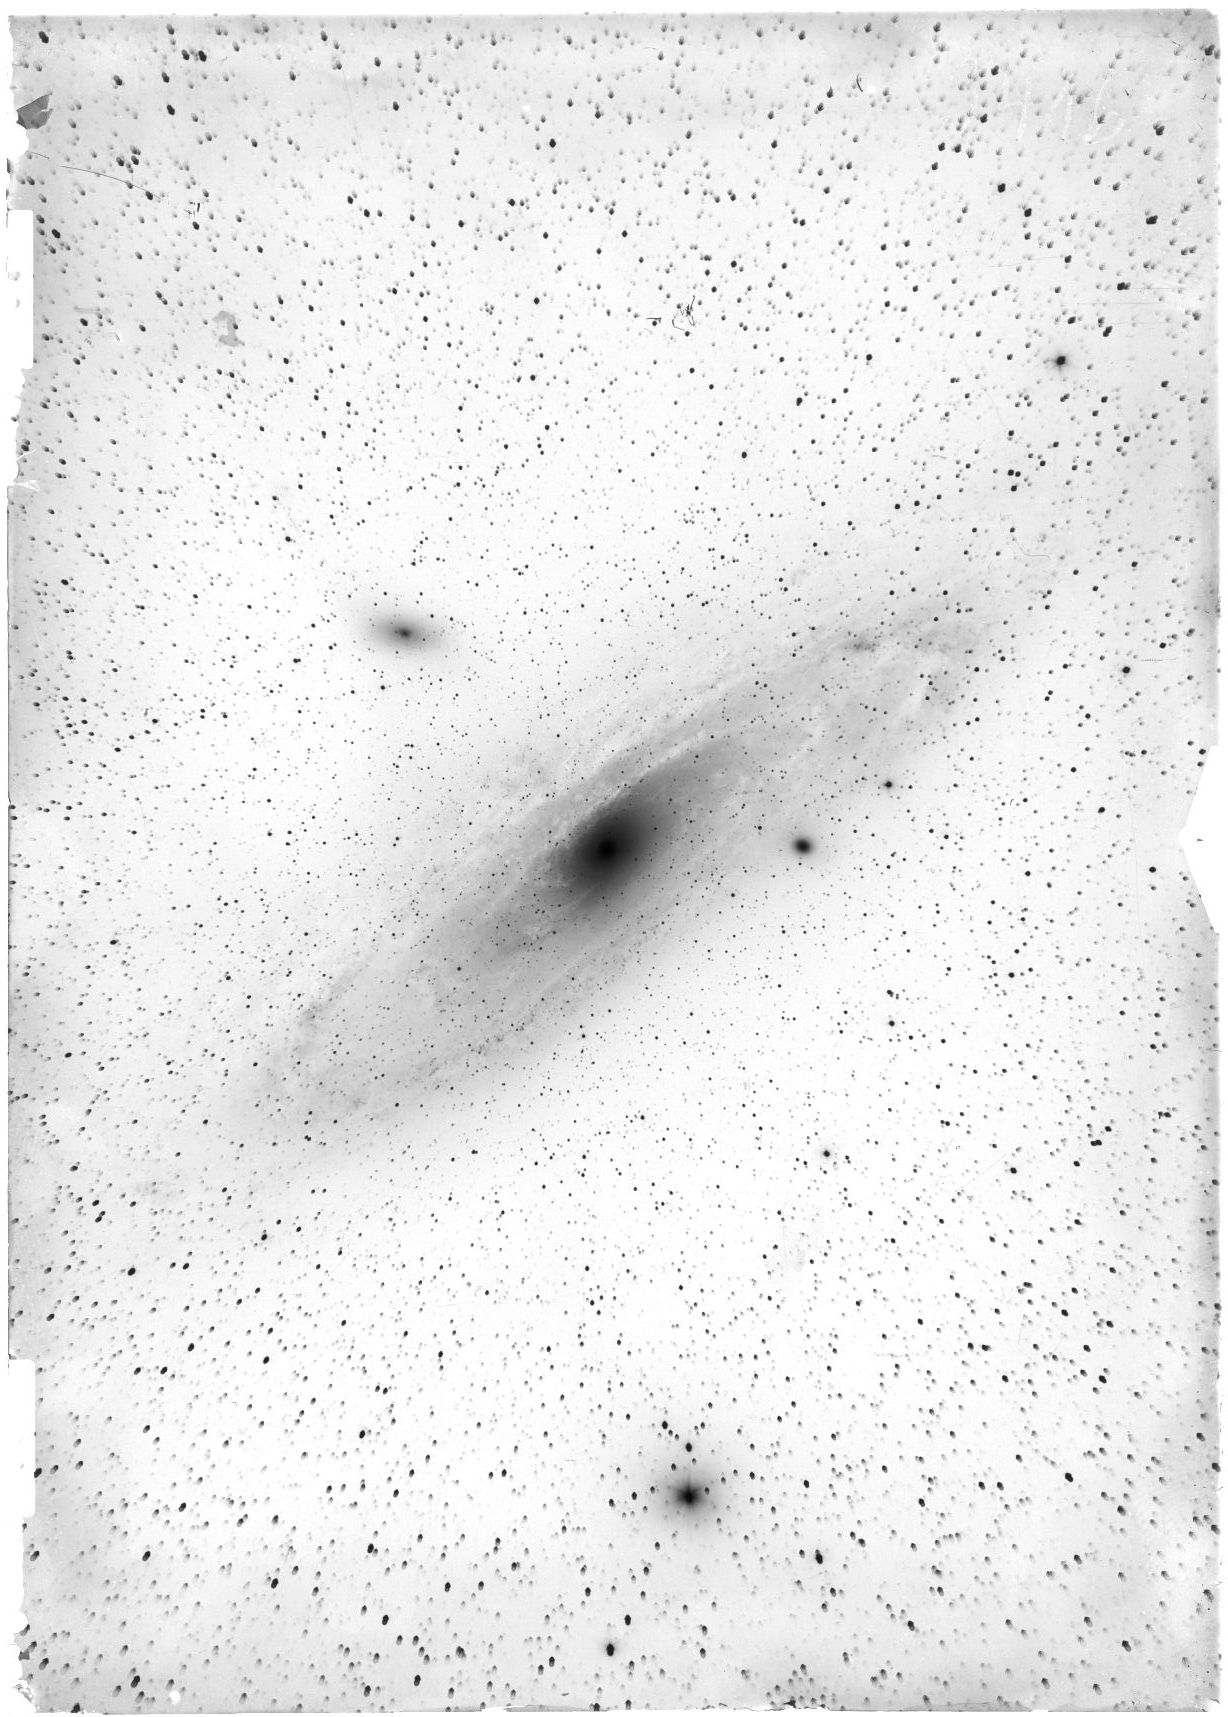 Andromedanebel, 1m-Spiegelteleskop, vom 24.10.1924, Richard Schorr